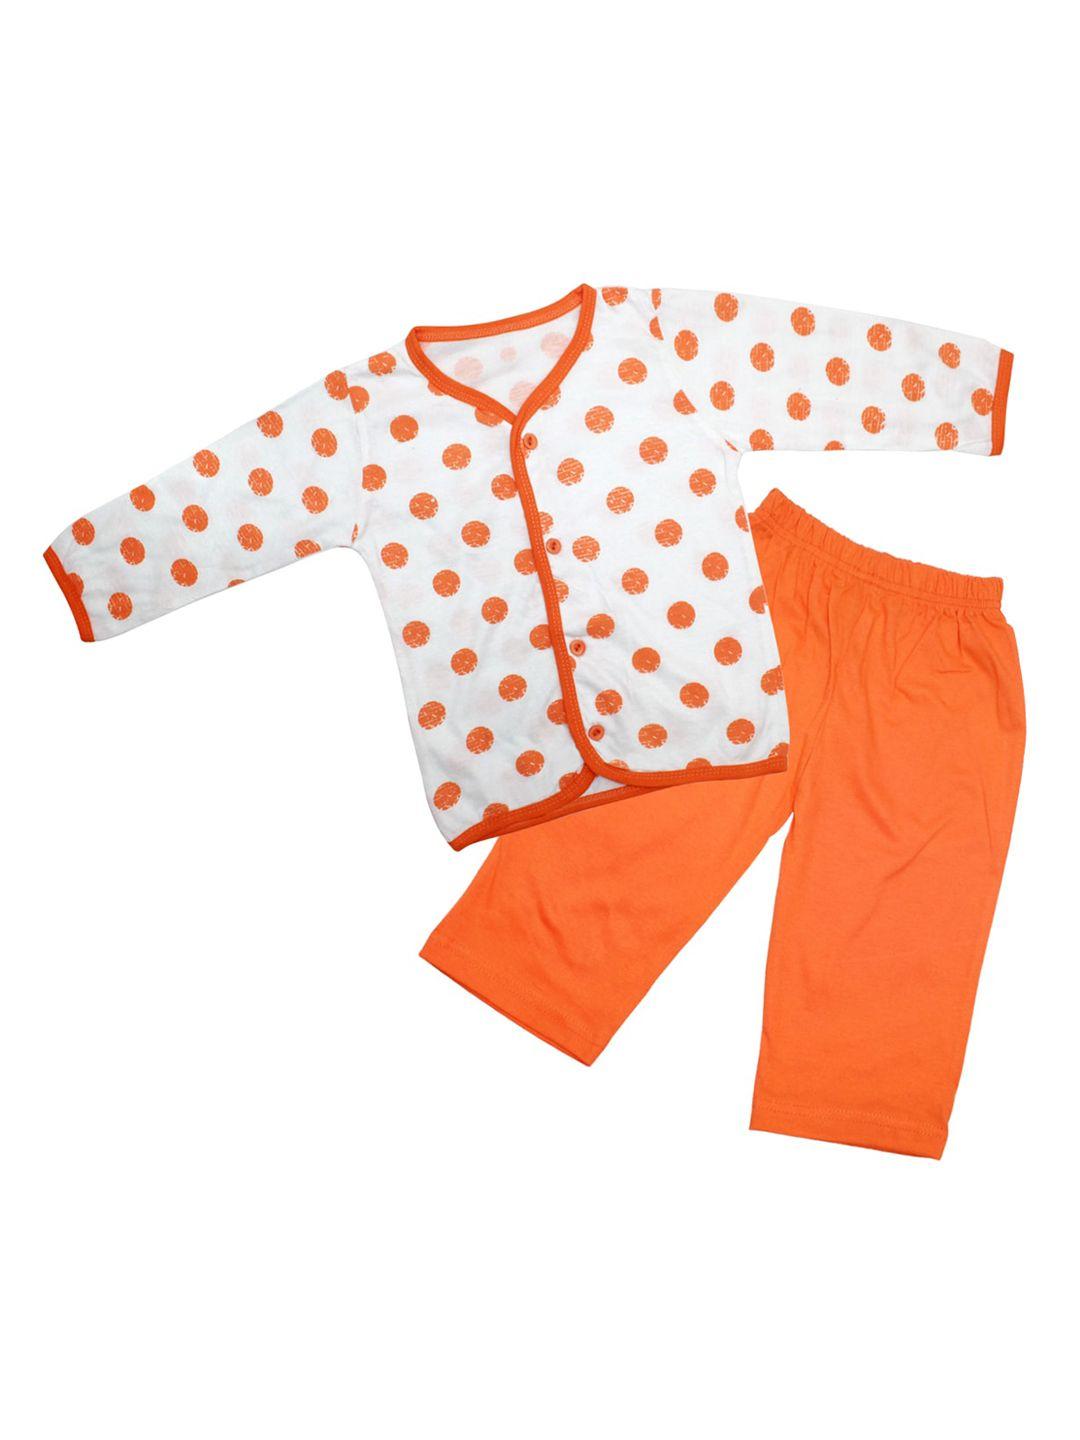 born babies unisex kids orange clothing set